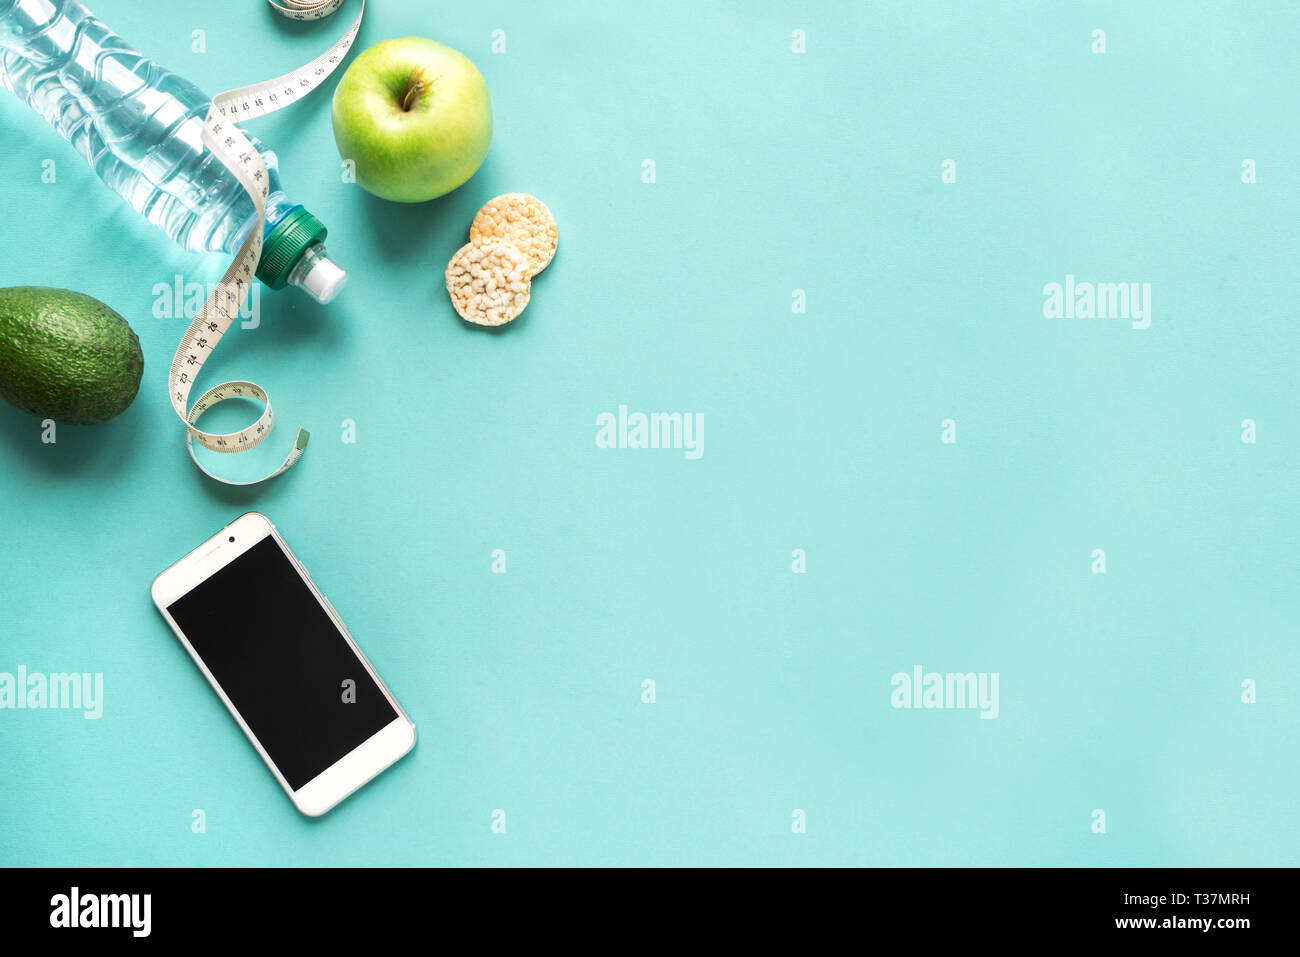 Mit Wasser, Obst und Maßband Smartphone. Fitness Ernährung Anwendung in Smartphone, Diät Konzept auf Blau, top anzeigen, kopieren. Stockfoto